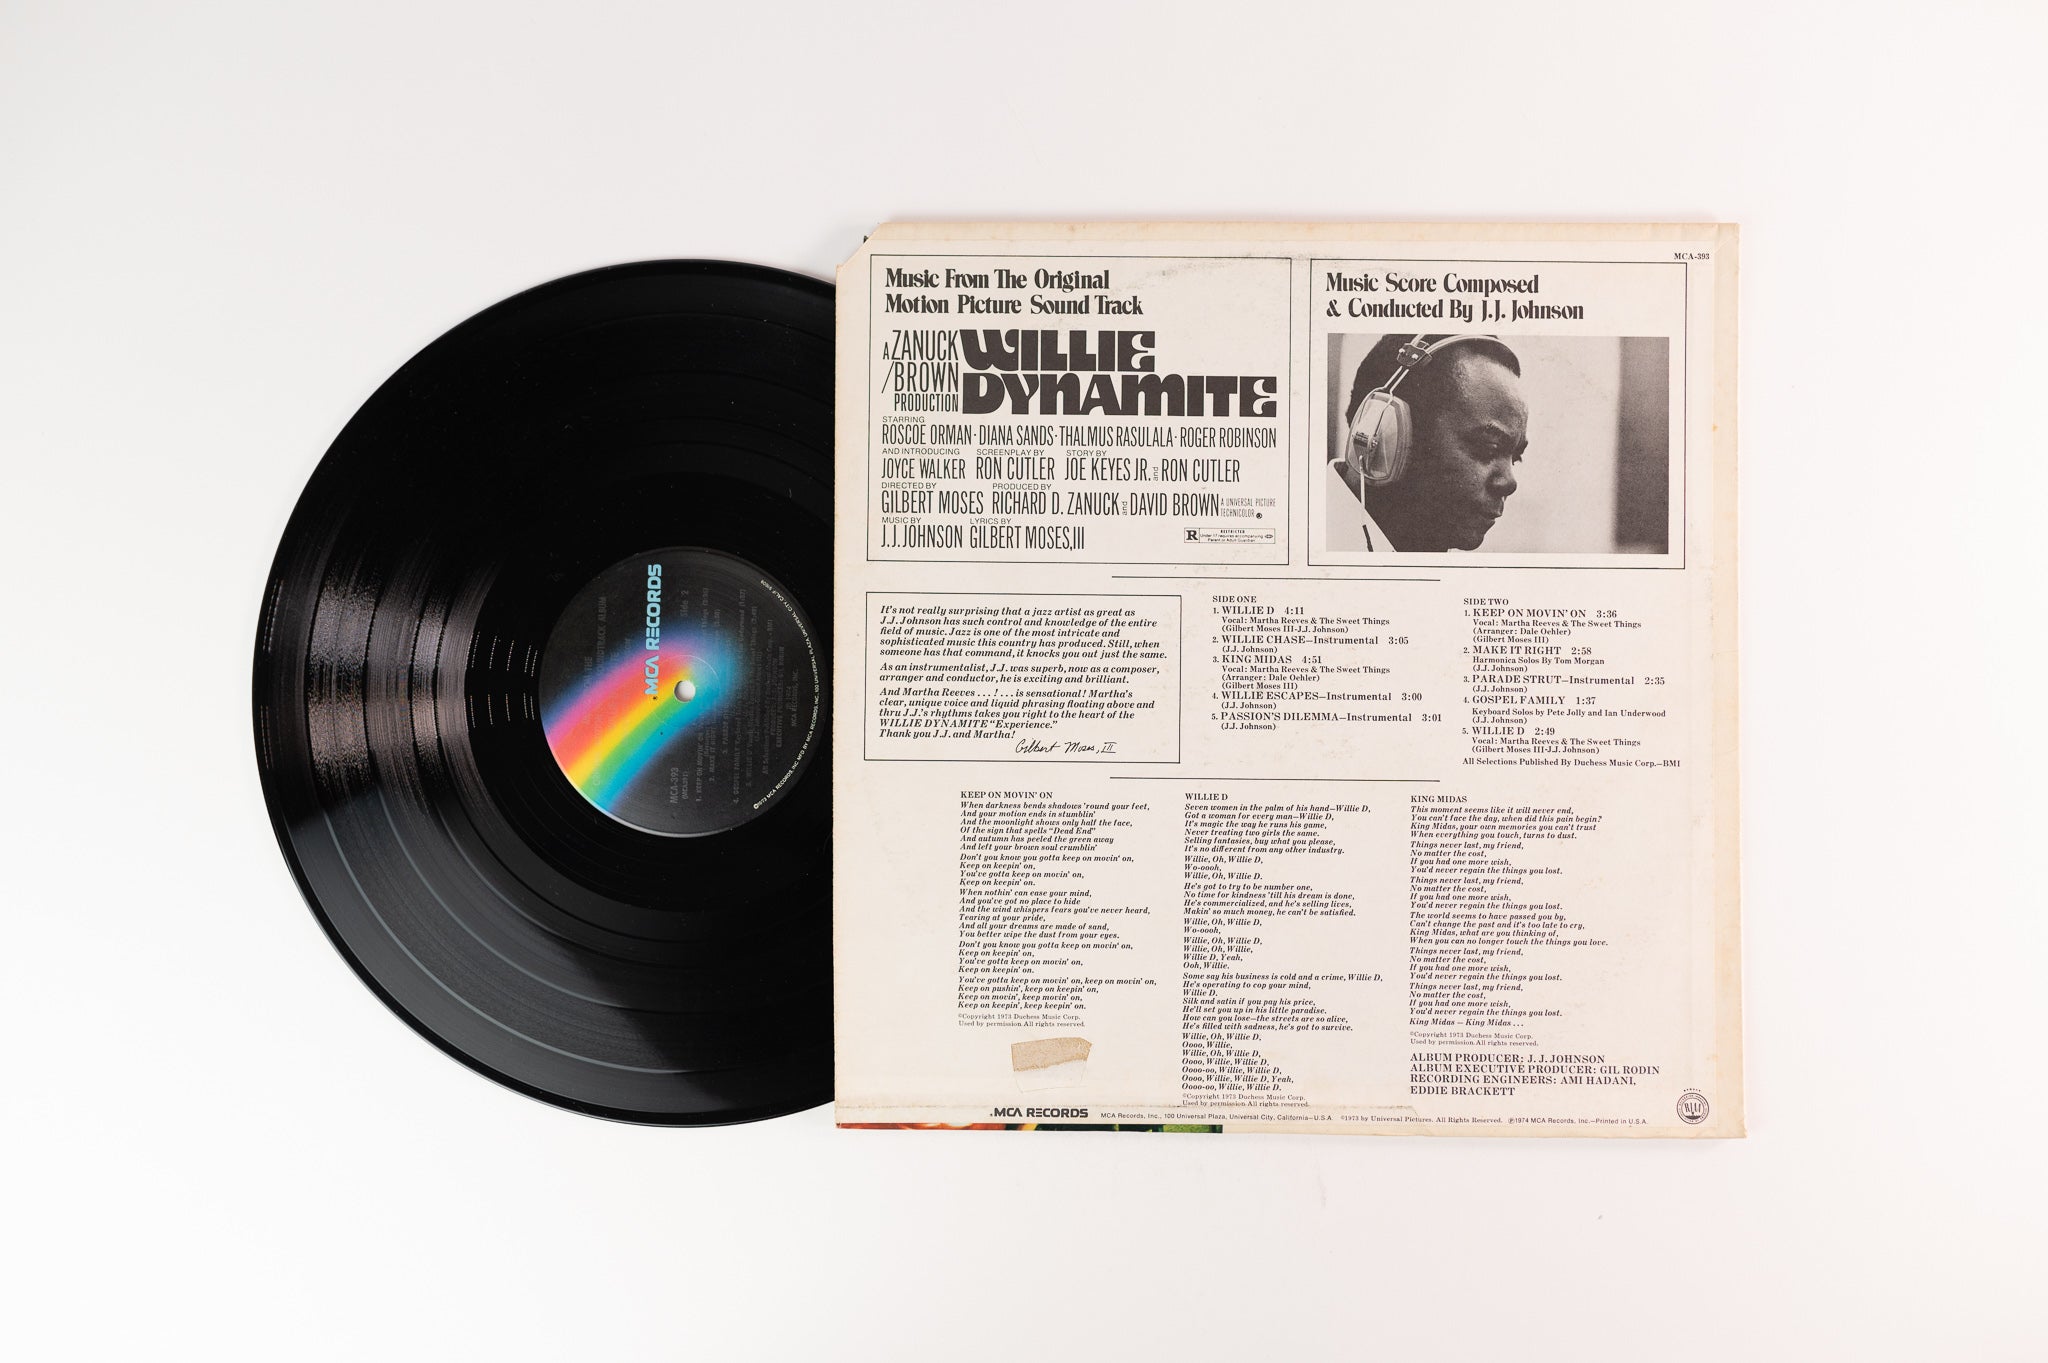 J.J. Johnson - Willie Dynamite Soundtrack on MCA